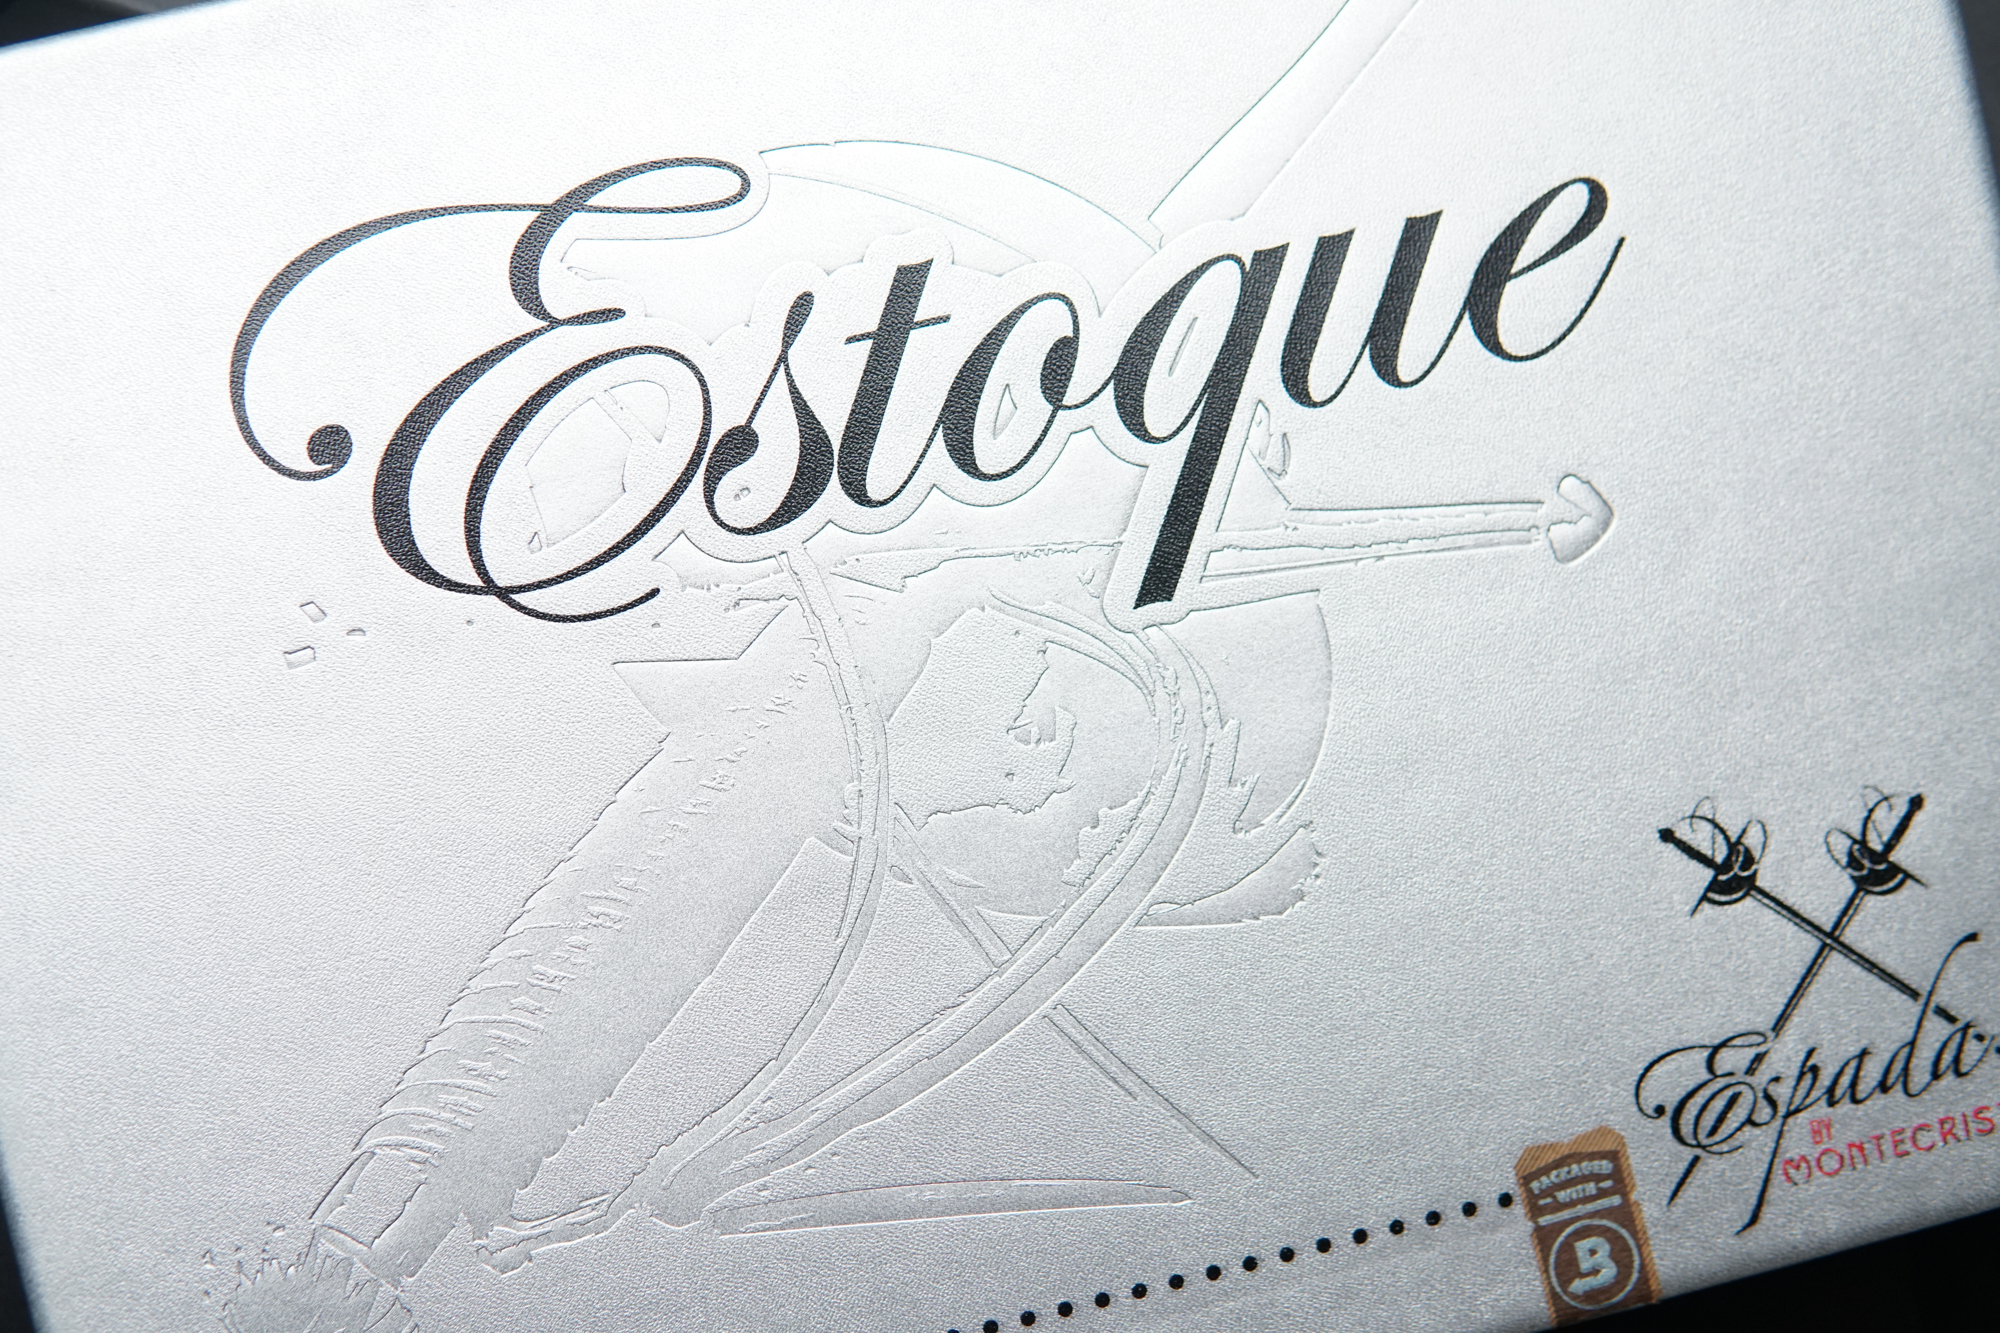 Estoque By Montecristo Cigar Box